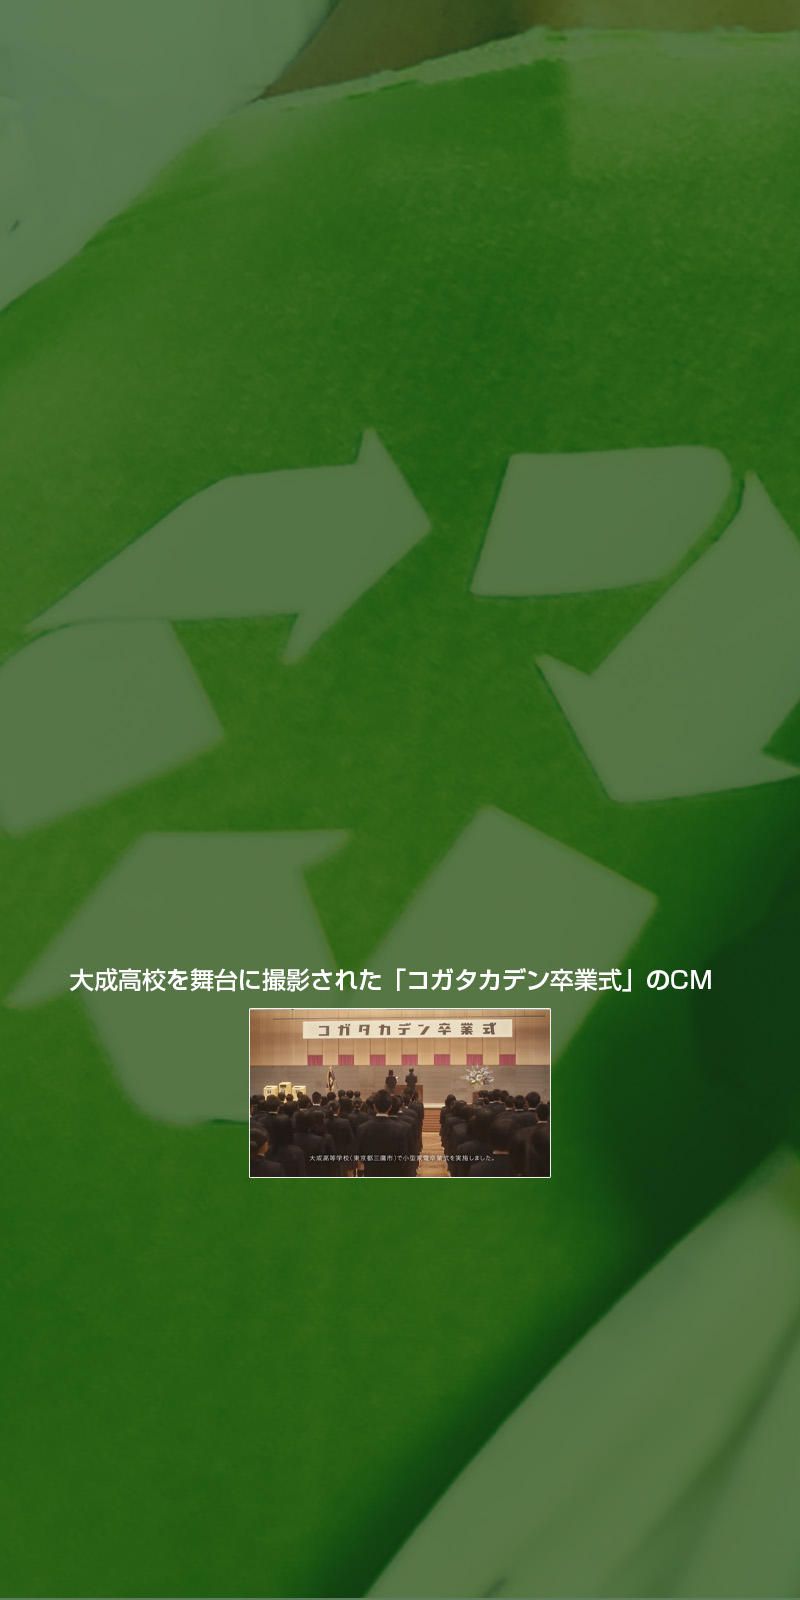 リサイクル教育